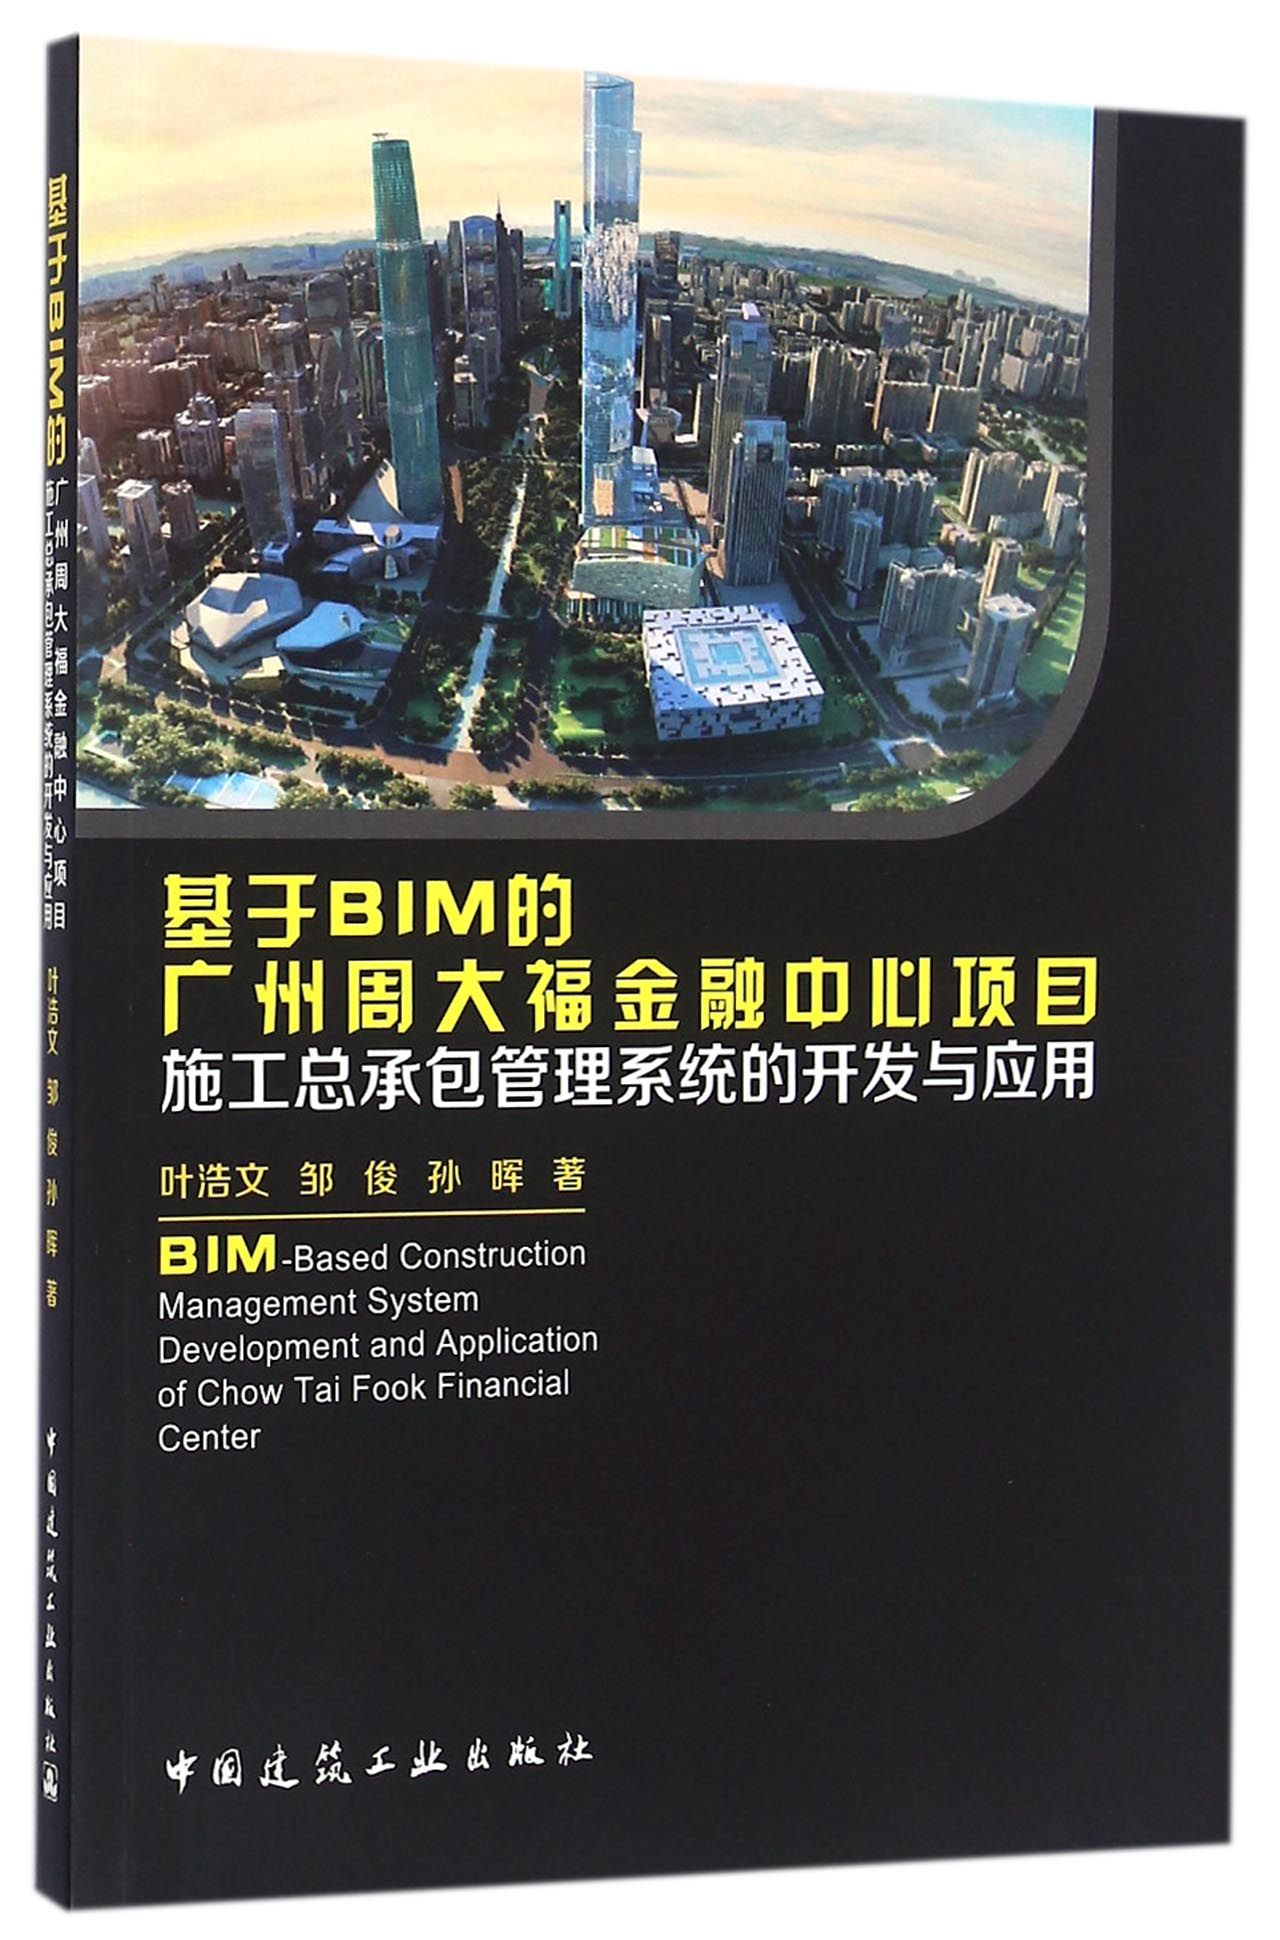 基于BIM的广州周大福金融中心项目施工总承包管理系统的开发与应用 mobi格式下载